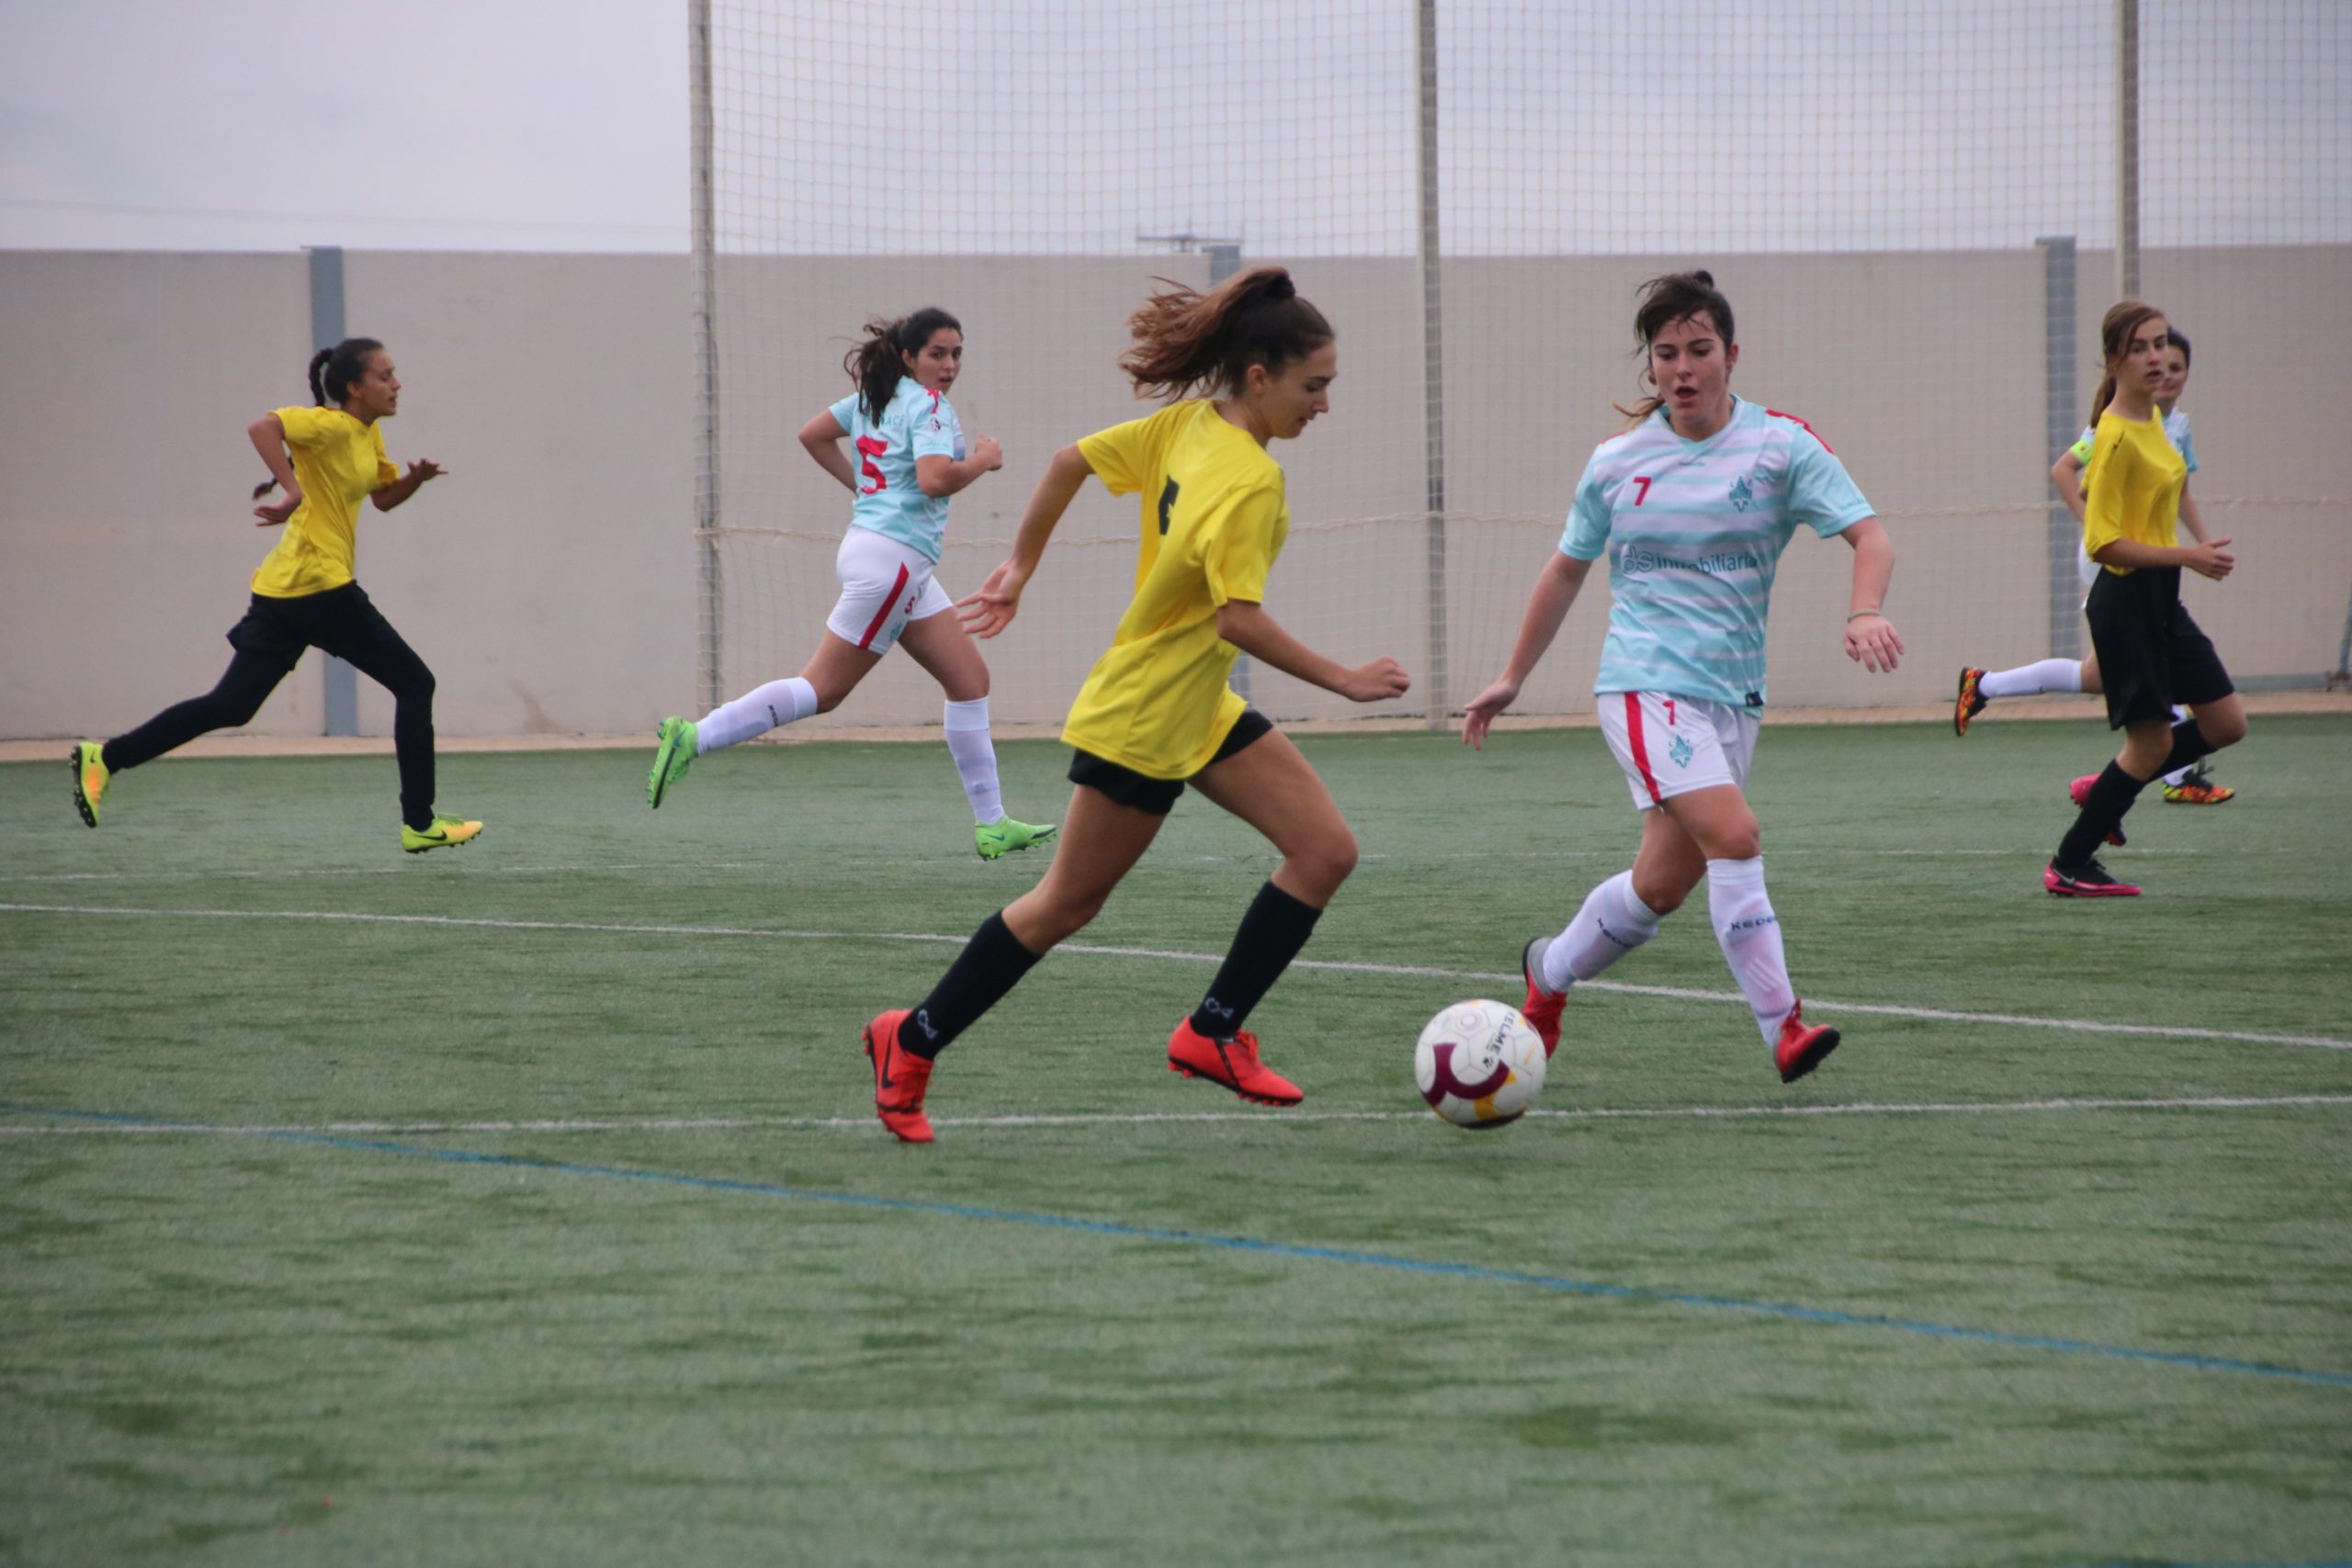 El fútbol femenino pide paso con el estreno del equipo de la Escuela y del Jumilla ACF